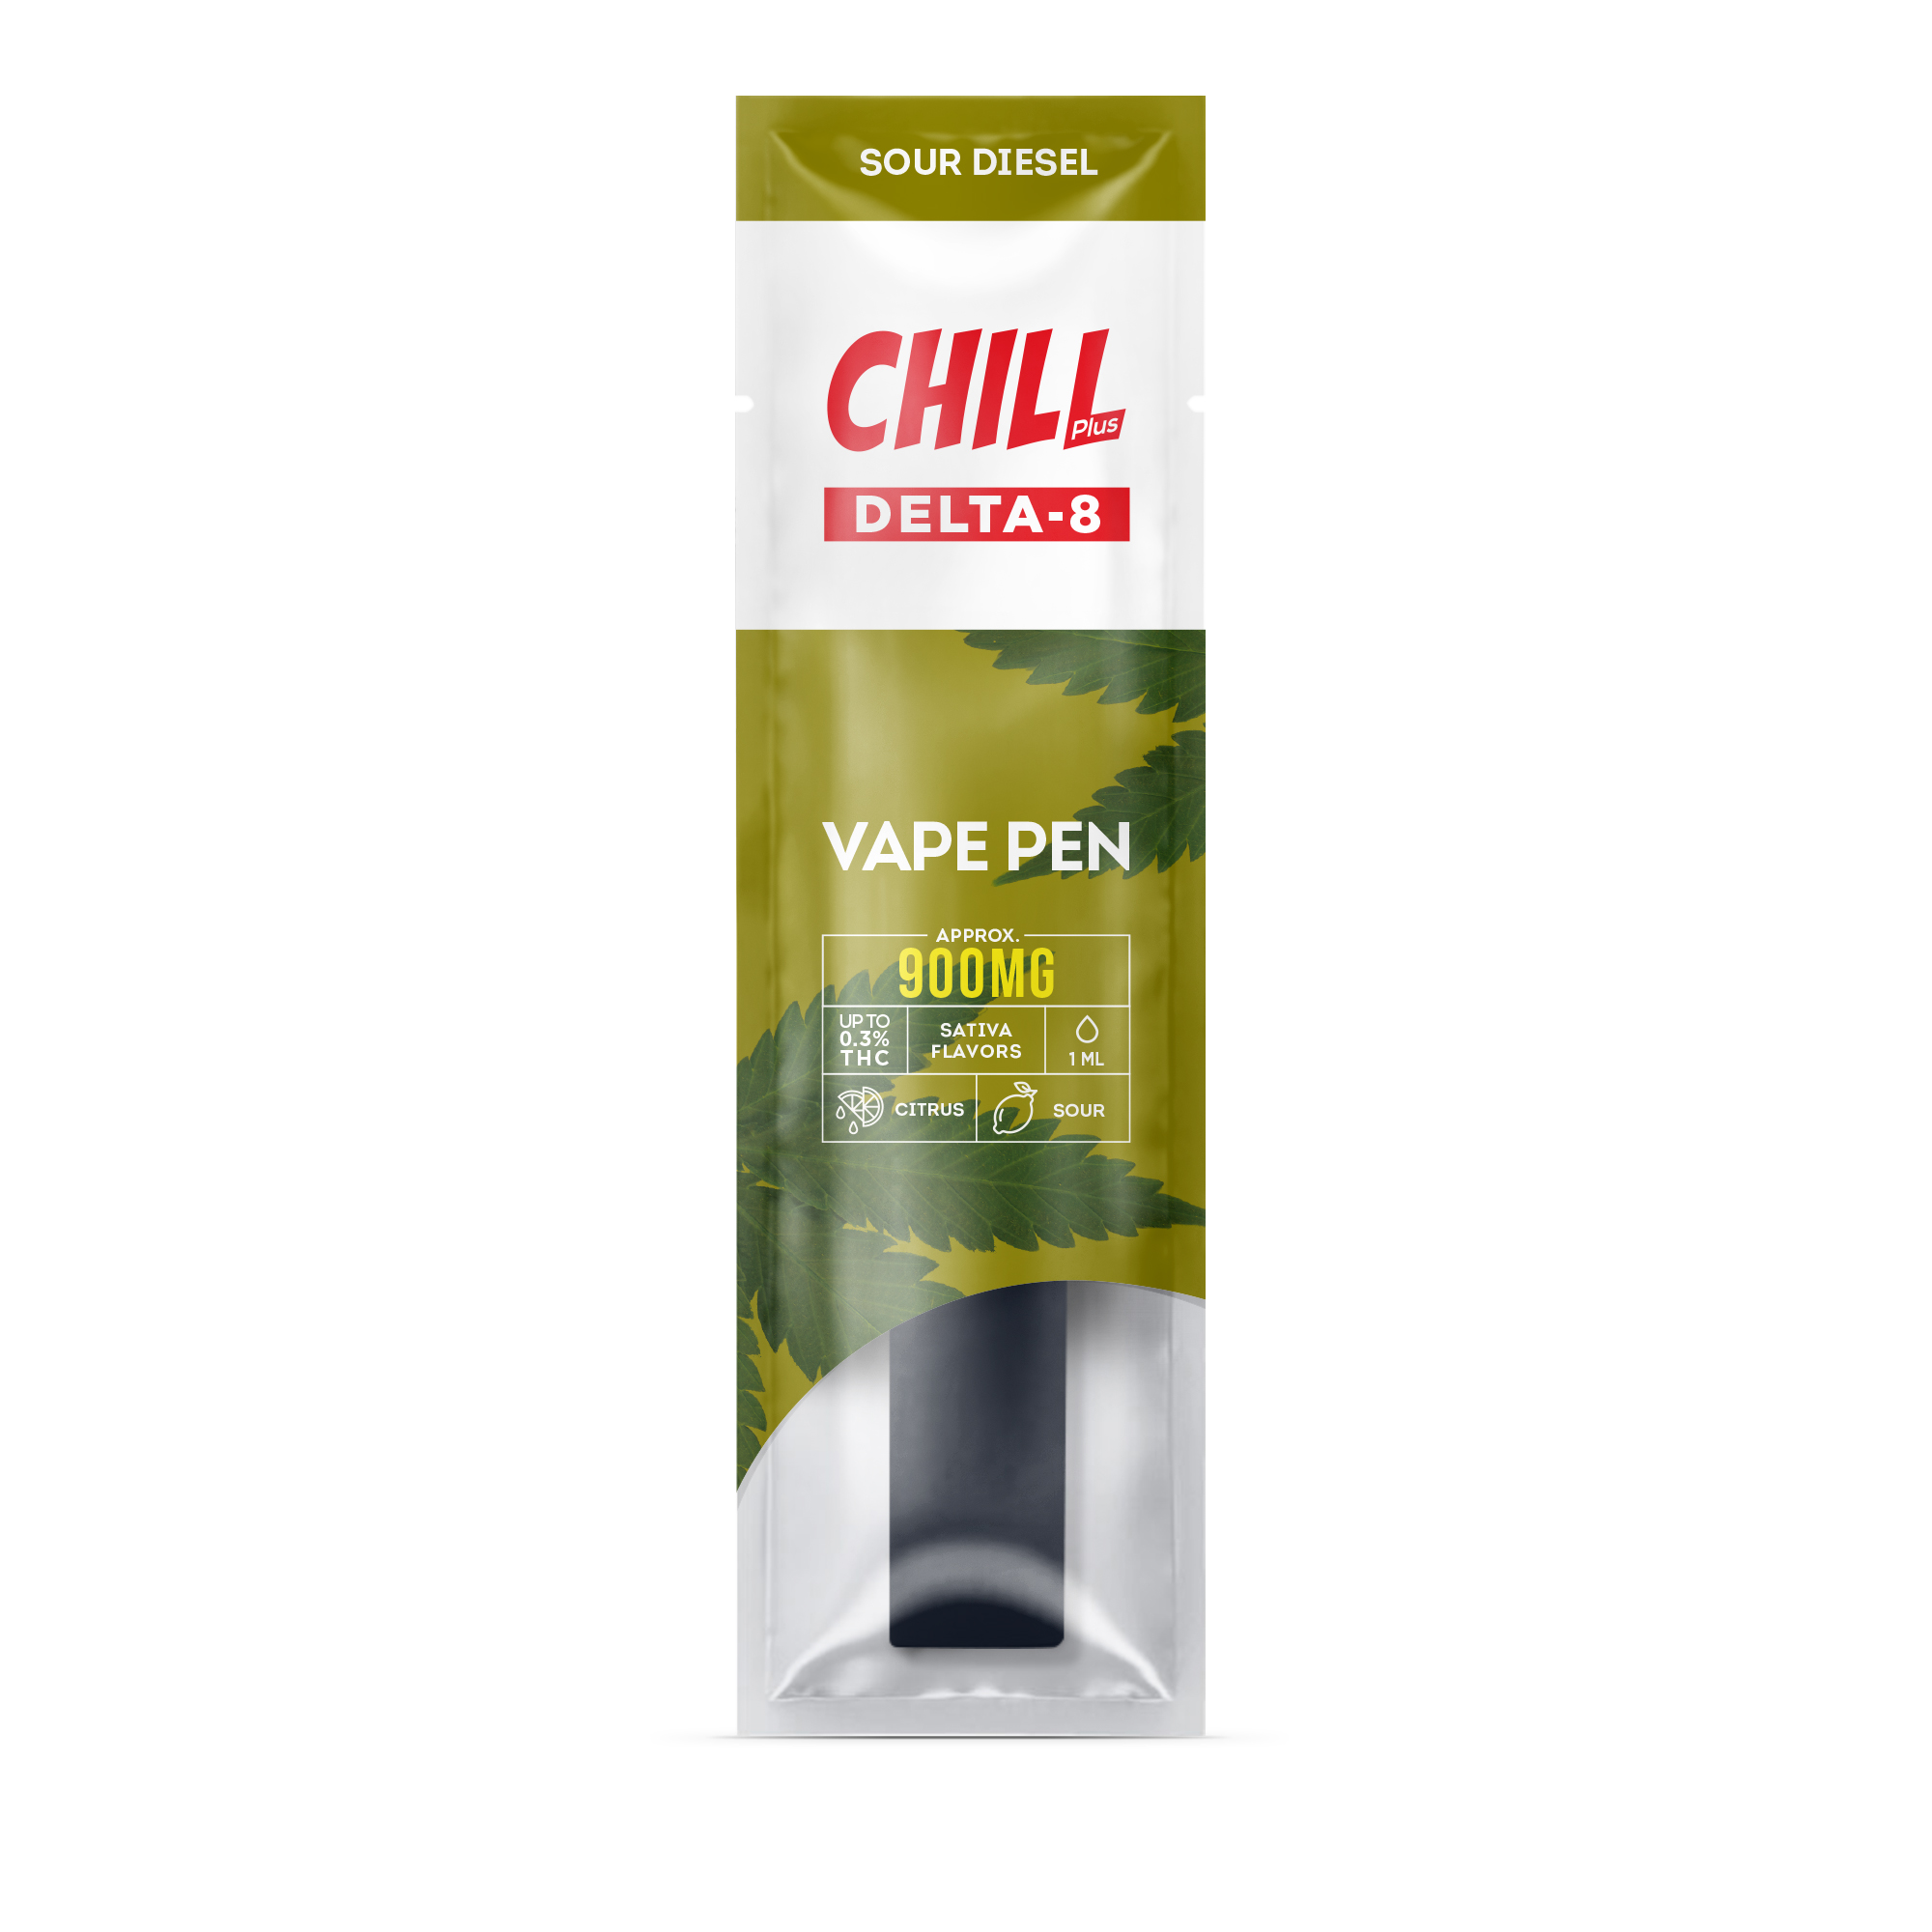 Chill Plus CBD & Delta-8 - Mini Disposable Stick - Sour Diesel - 900mg (1ml) - Diamond CBD